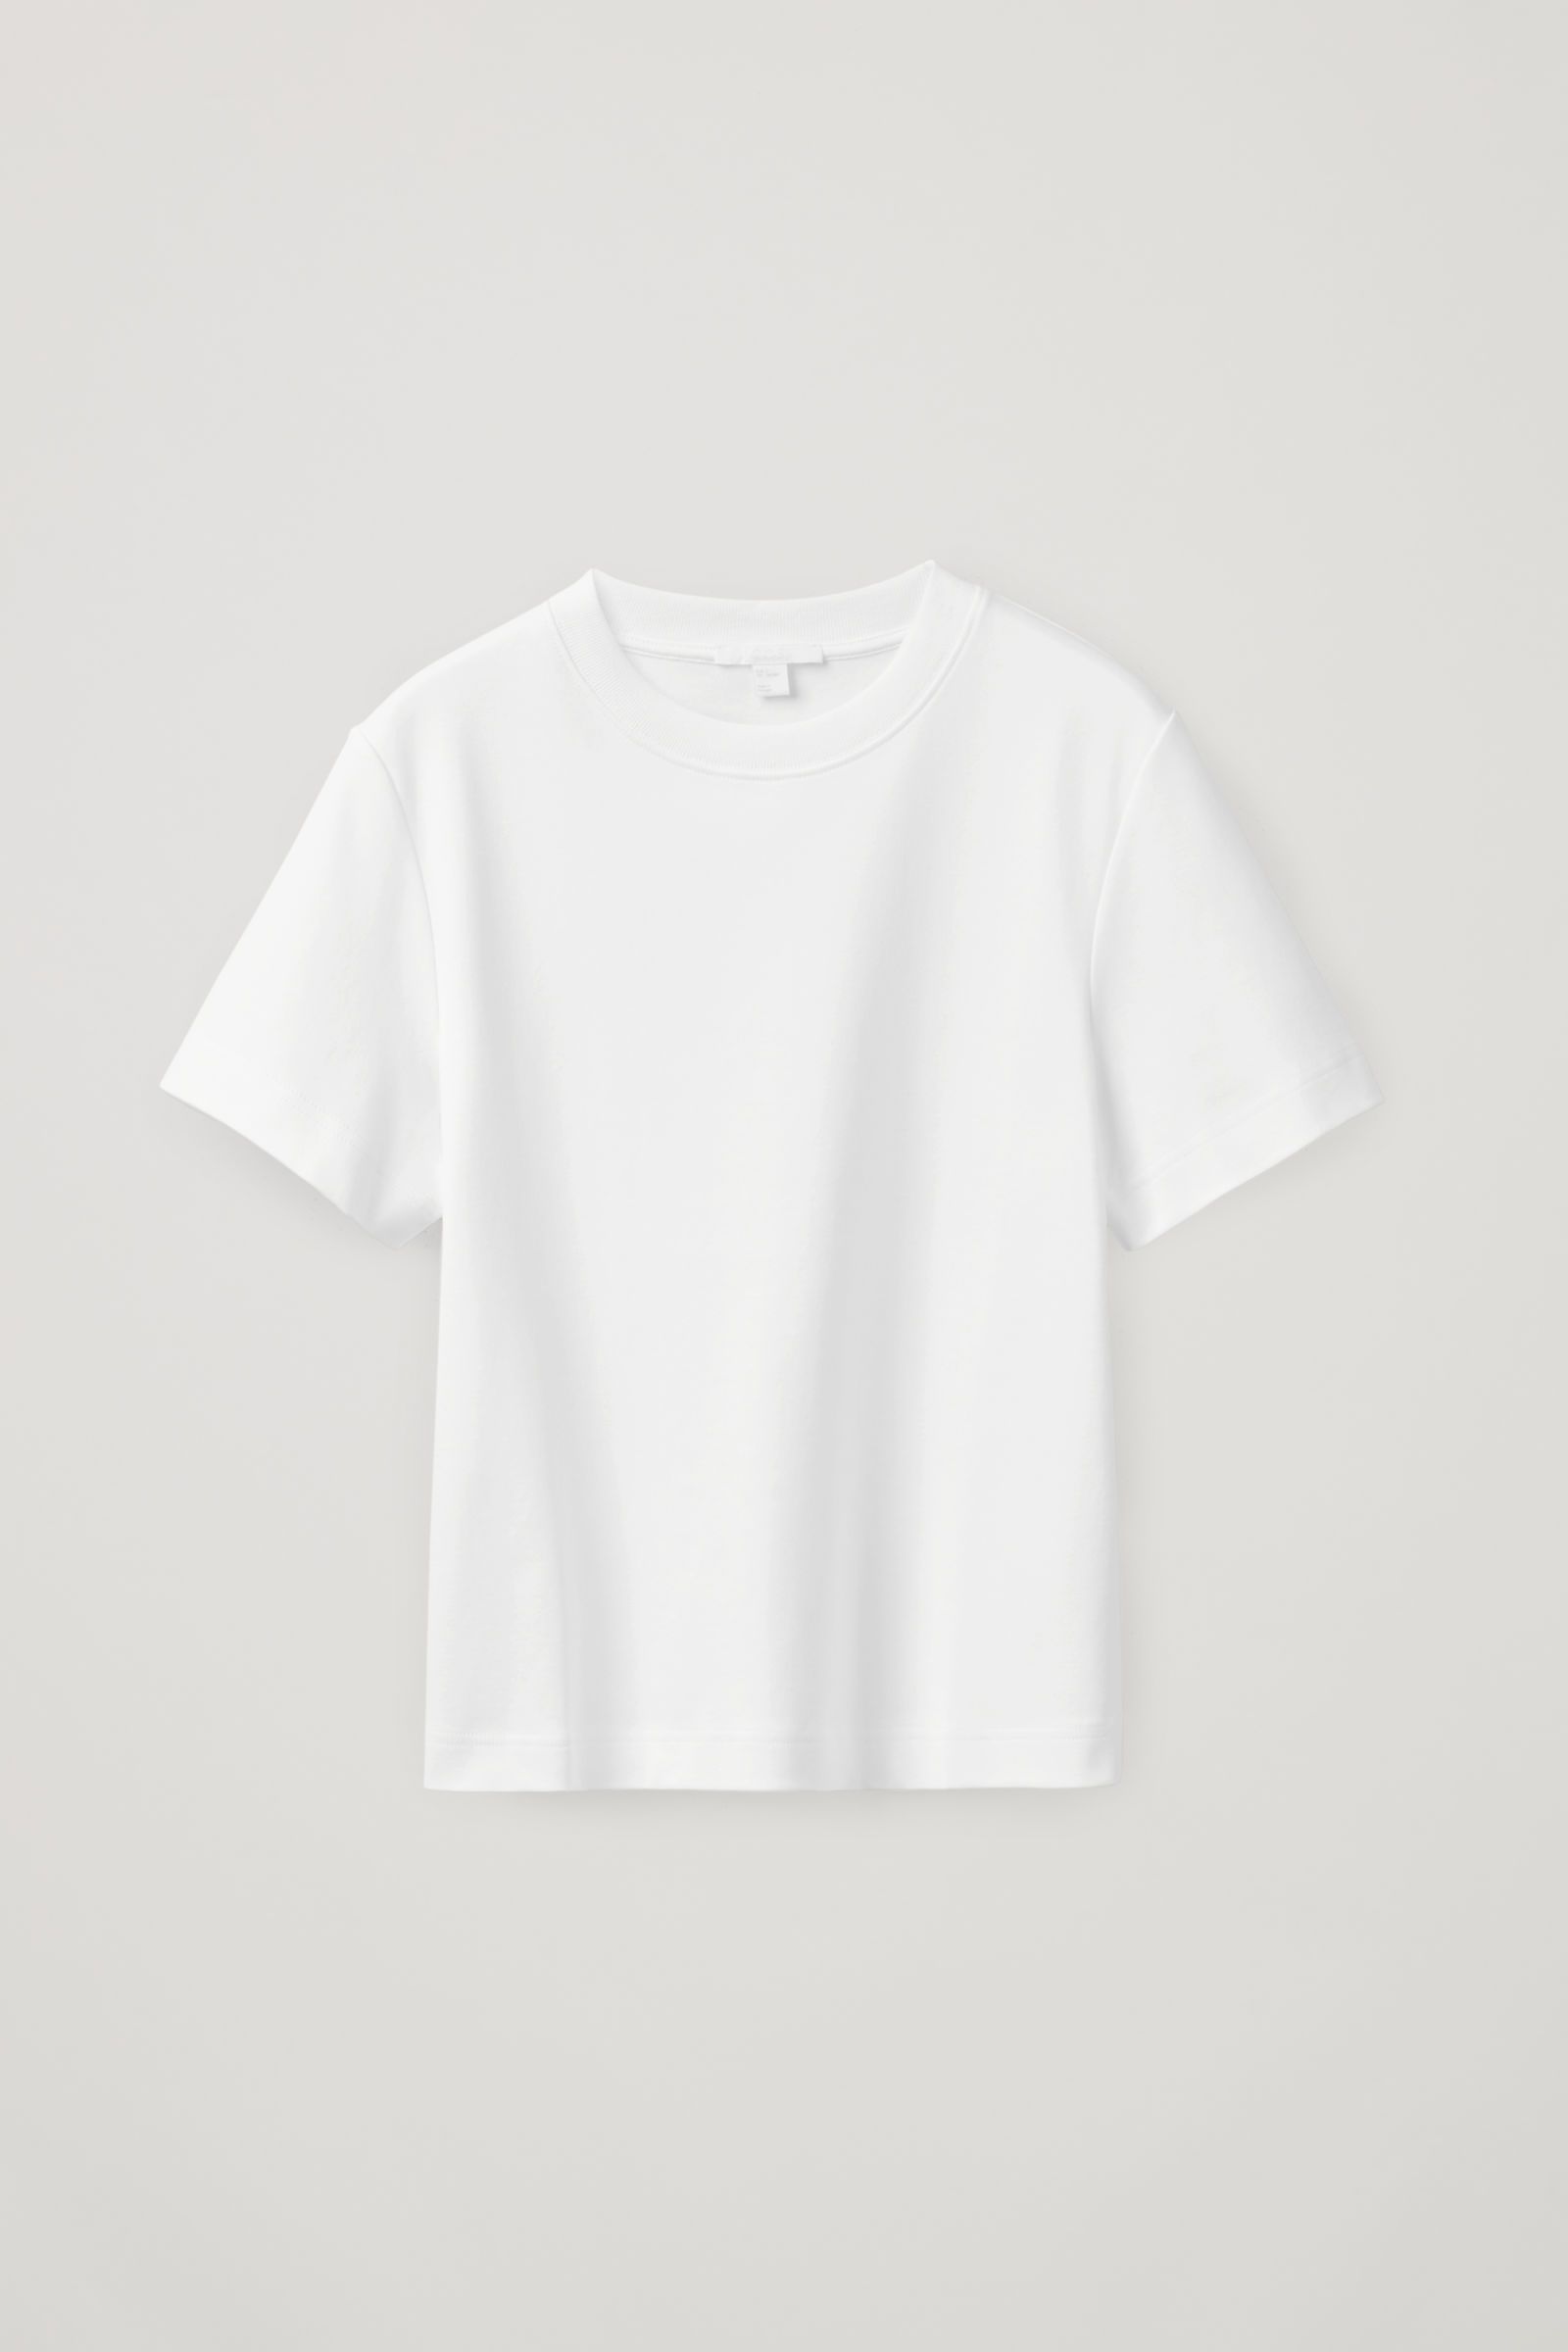 Buy best women's white t shirt uk - In stock